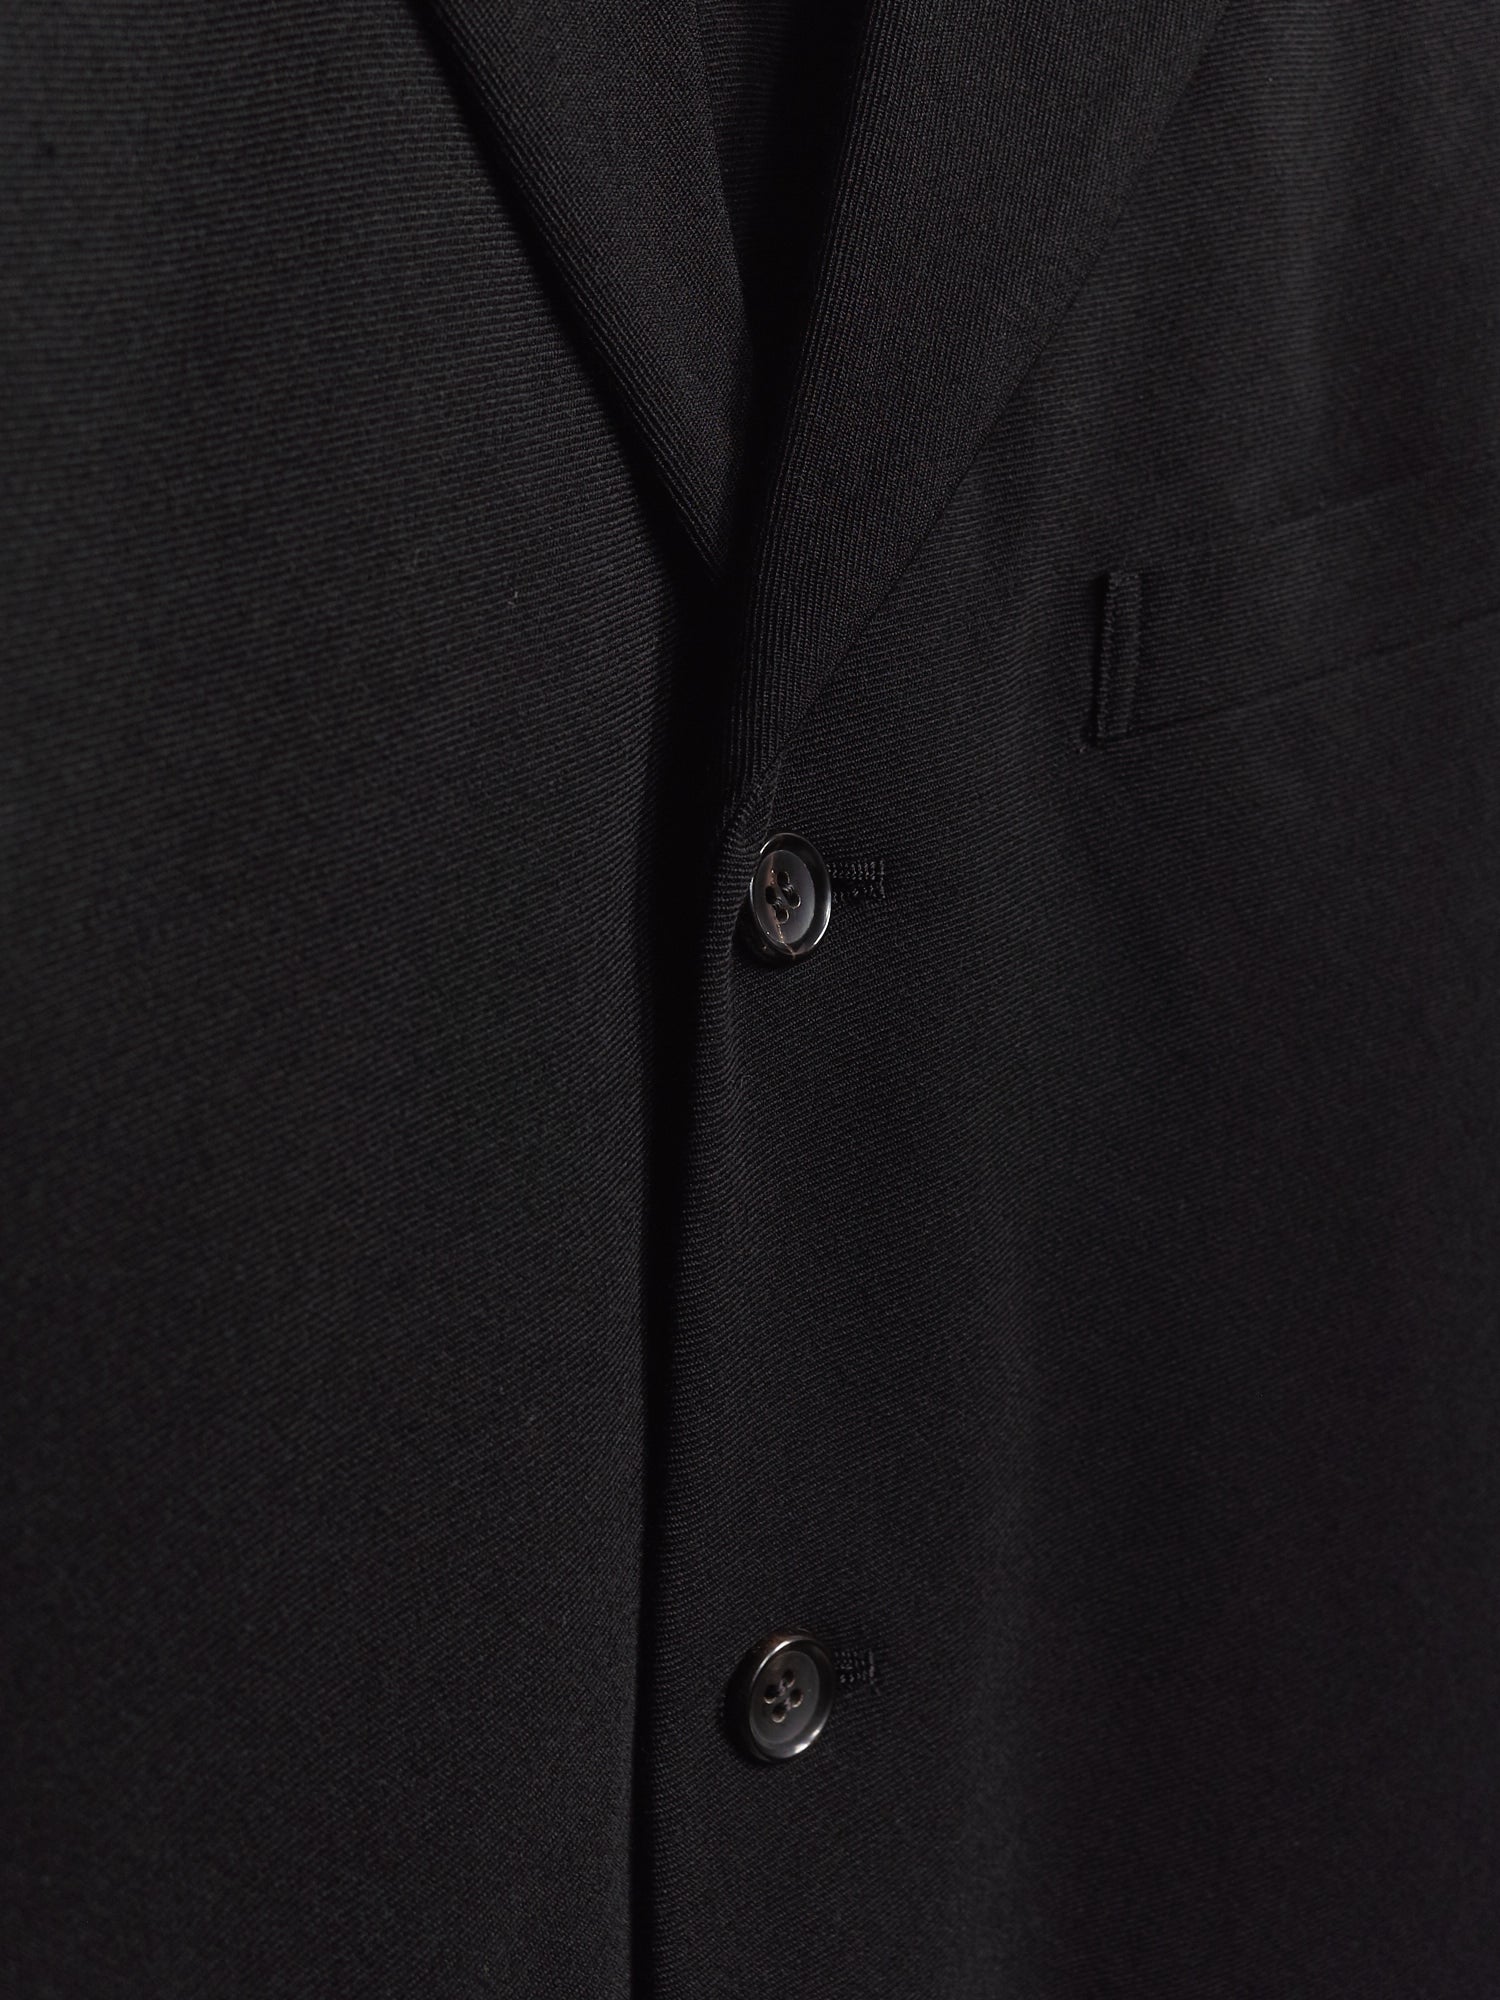 Comme des Garcons Homme Plus 1997 black wool 3 button elastic waist suit - sz S